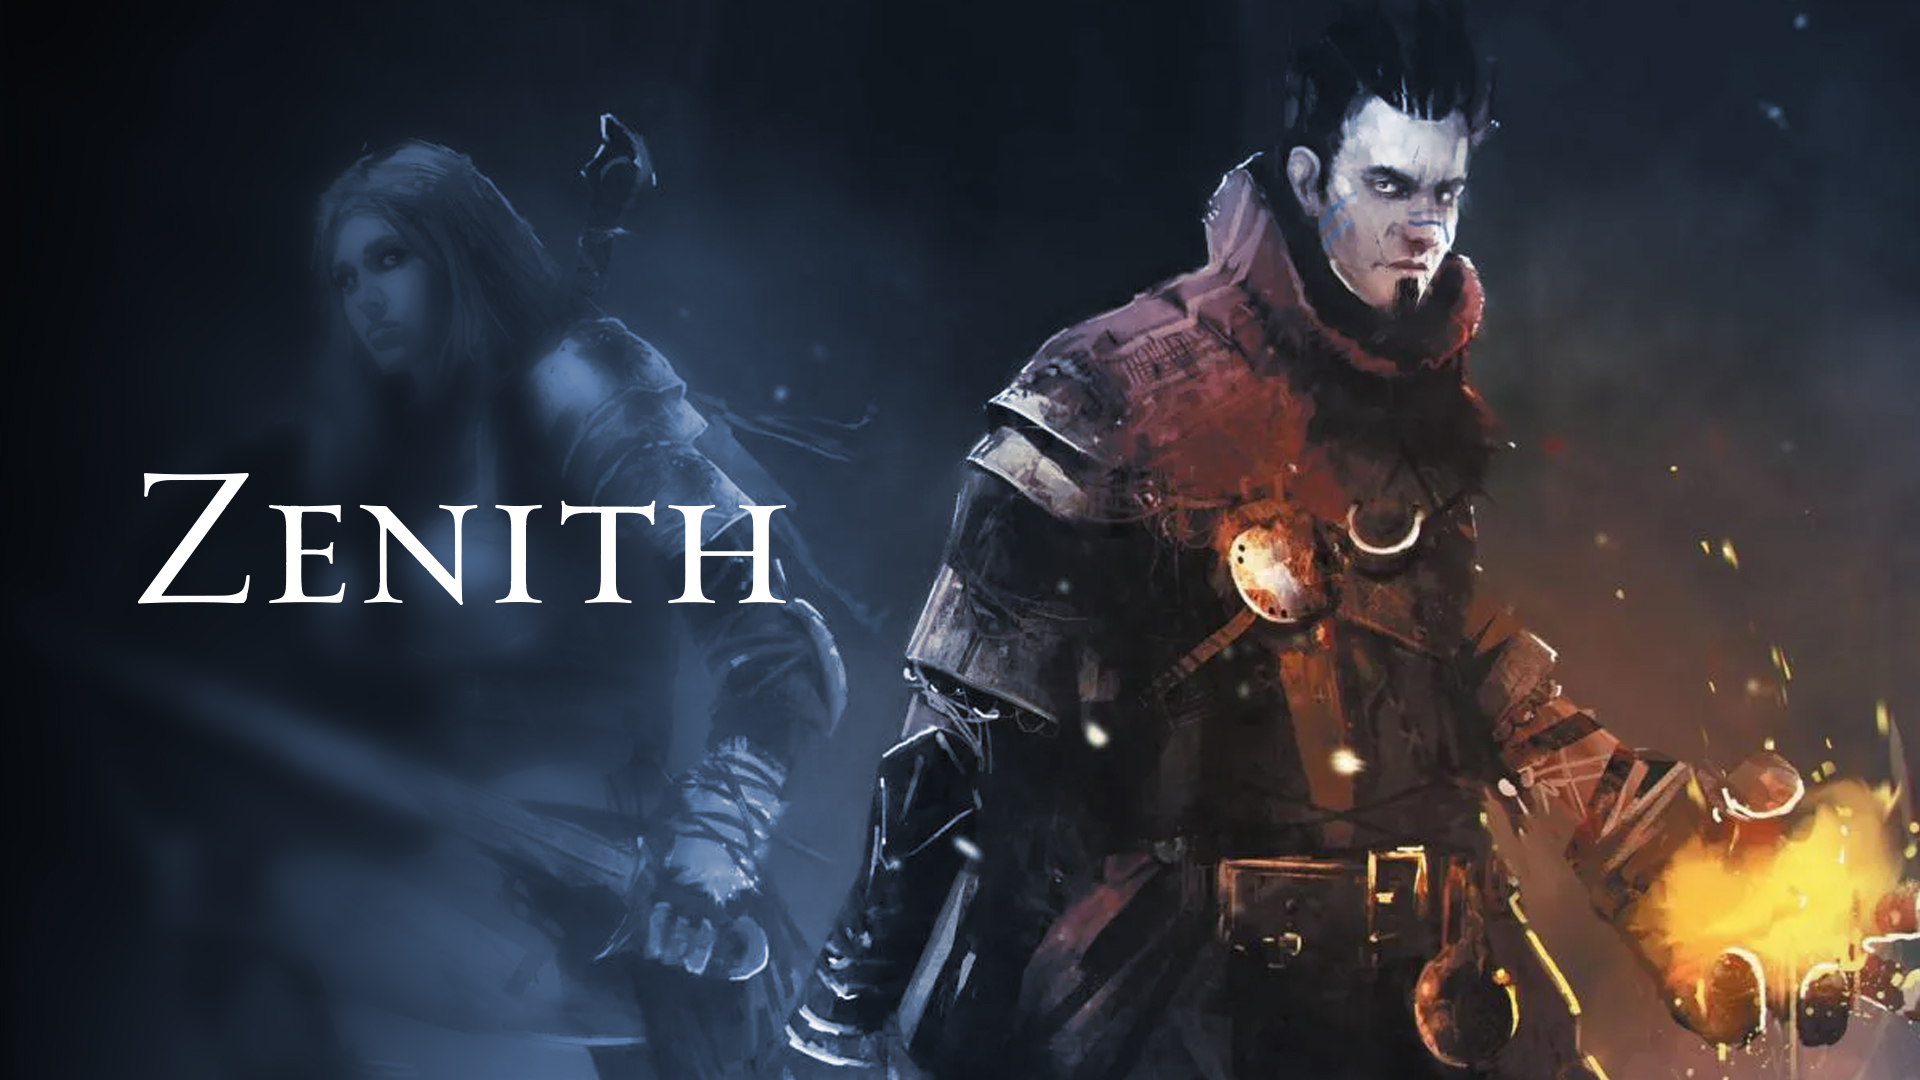 Zenith – Trailer for Xbox One – Infinigon Games